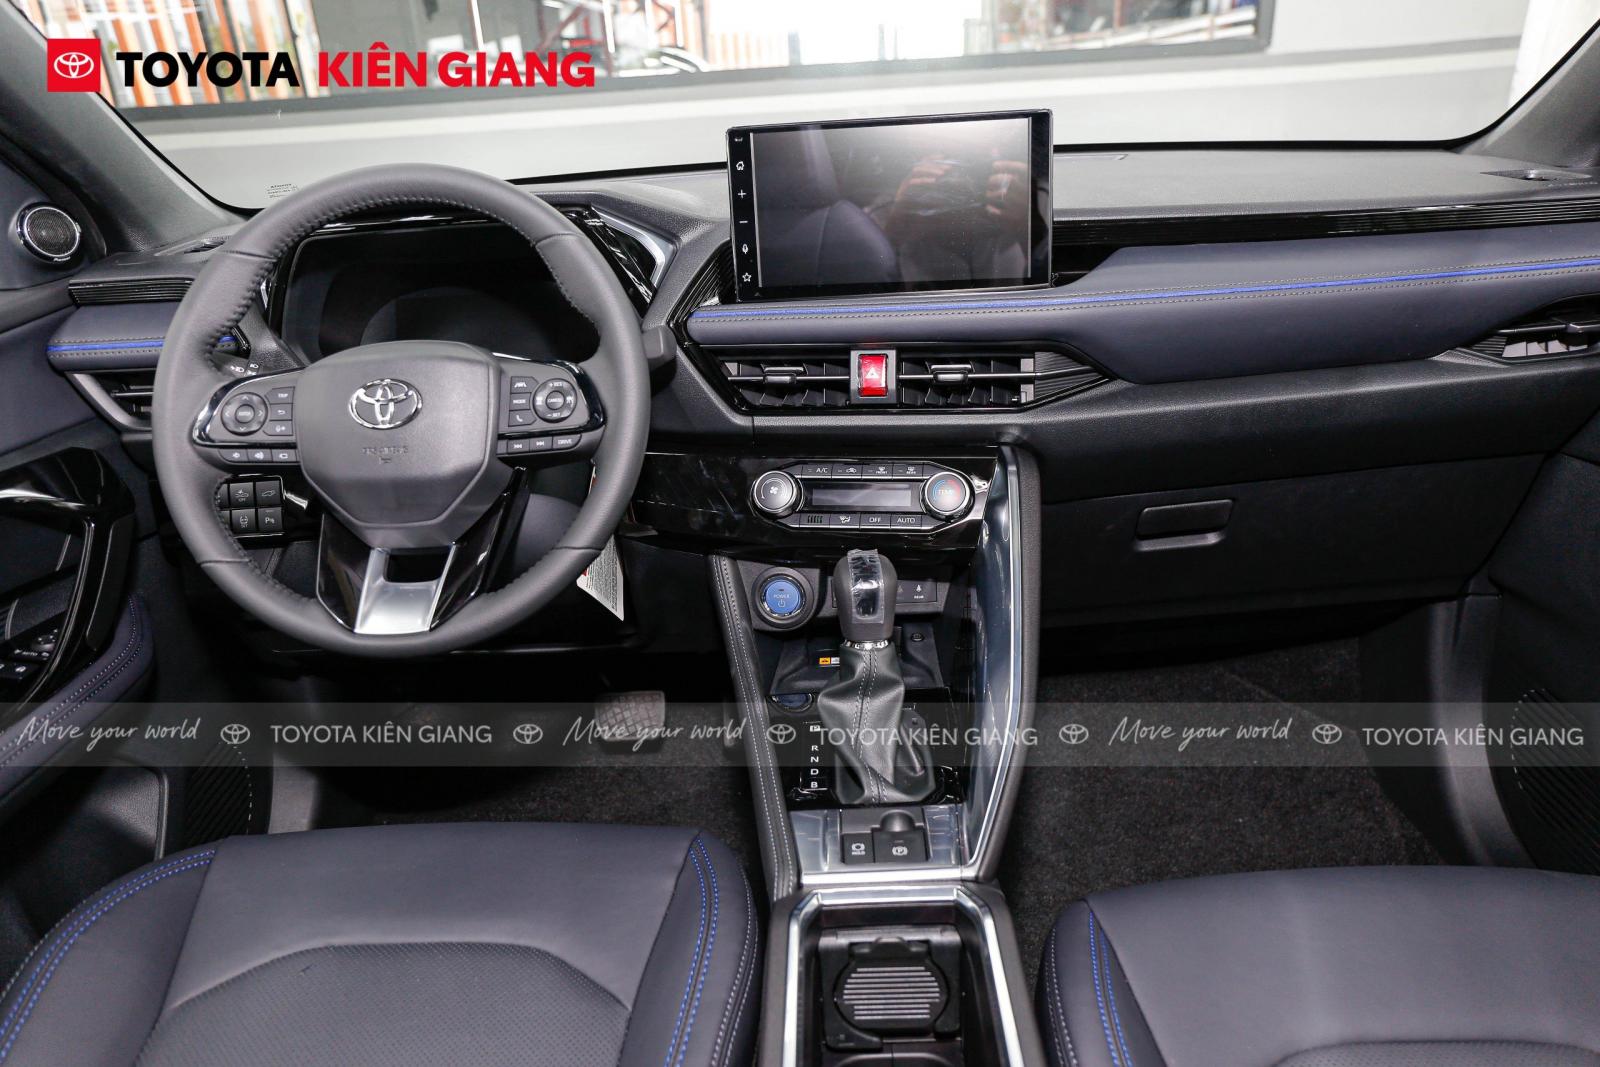 Ngồi thử Toyota Yaris Cross bản thuần xăng giá 730 triệu đồng: Rẻ hơn 100 triệu nhưng option không khác biệt nhiều - Ảnh 7.